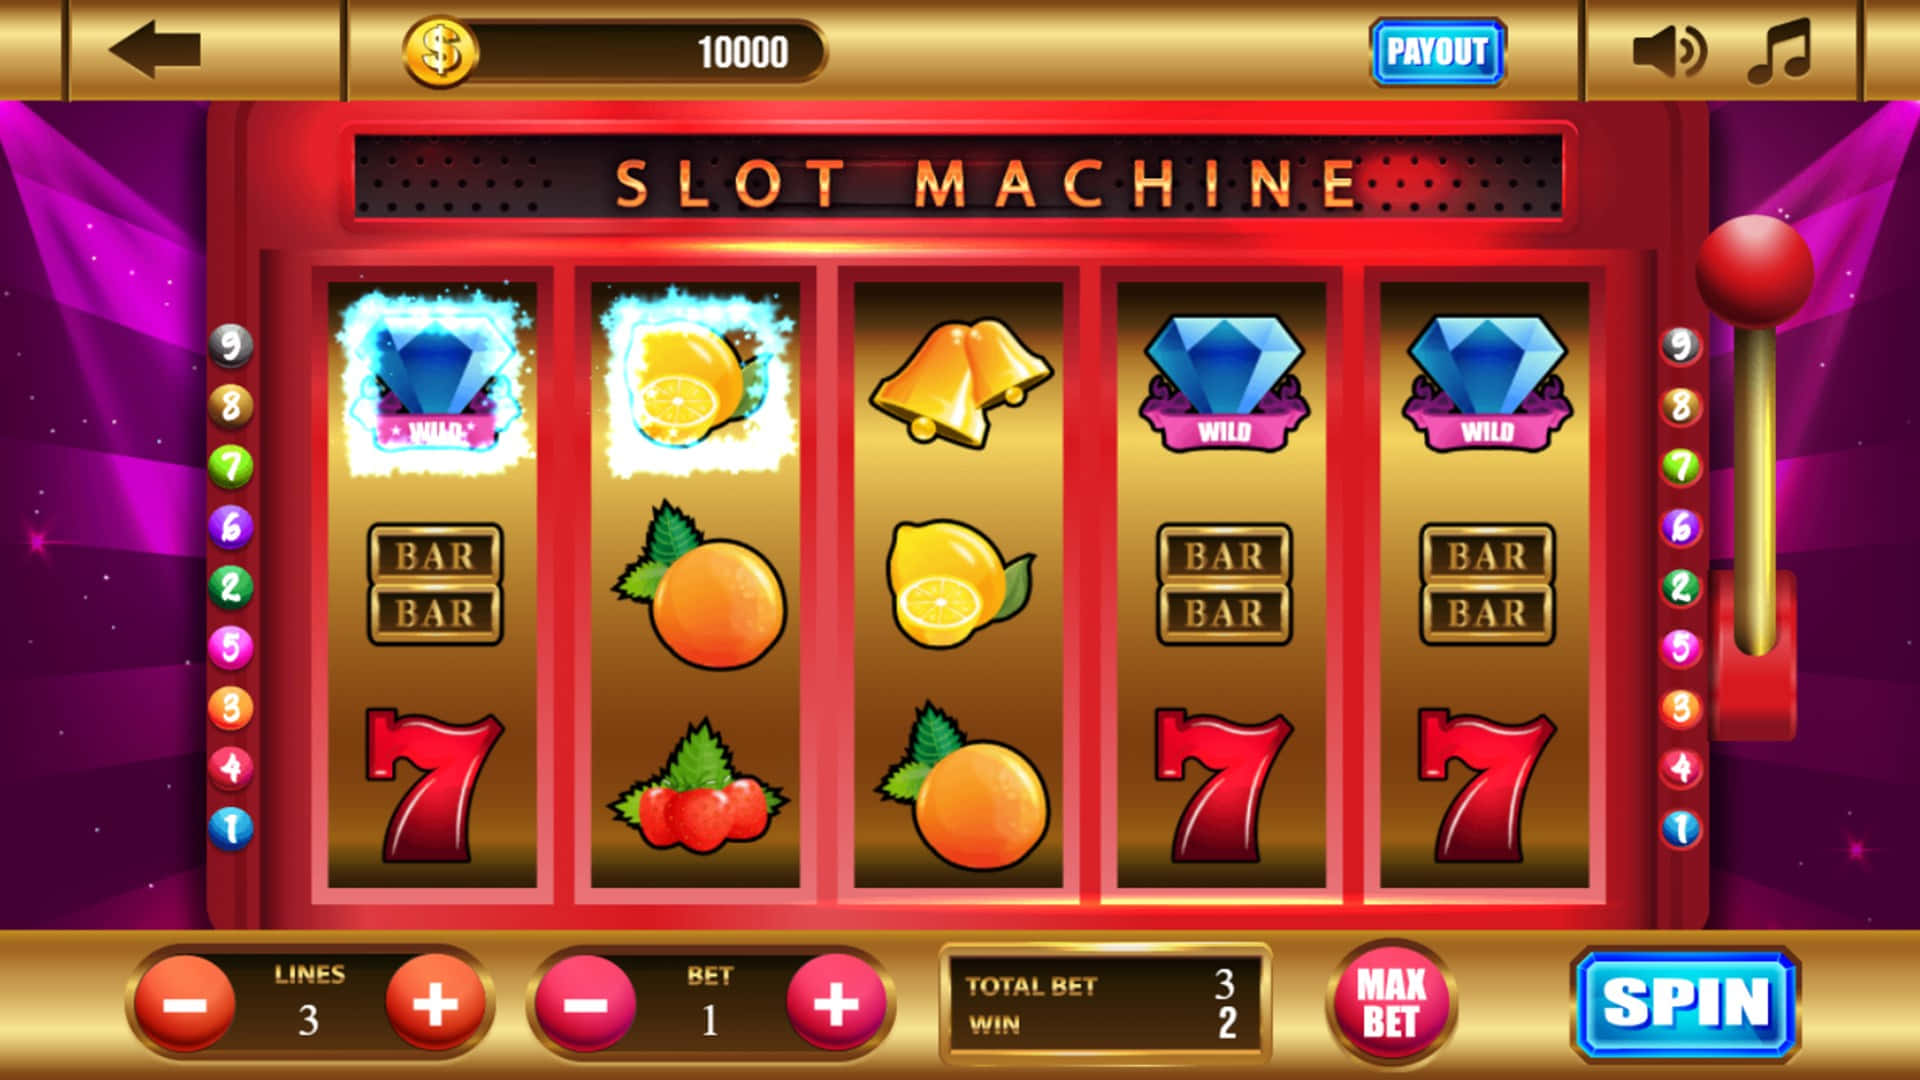 Slot Machines Casino Mobile Game Picture